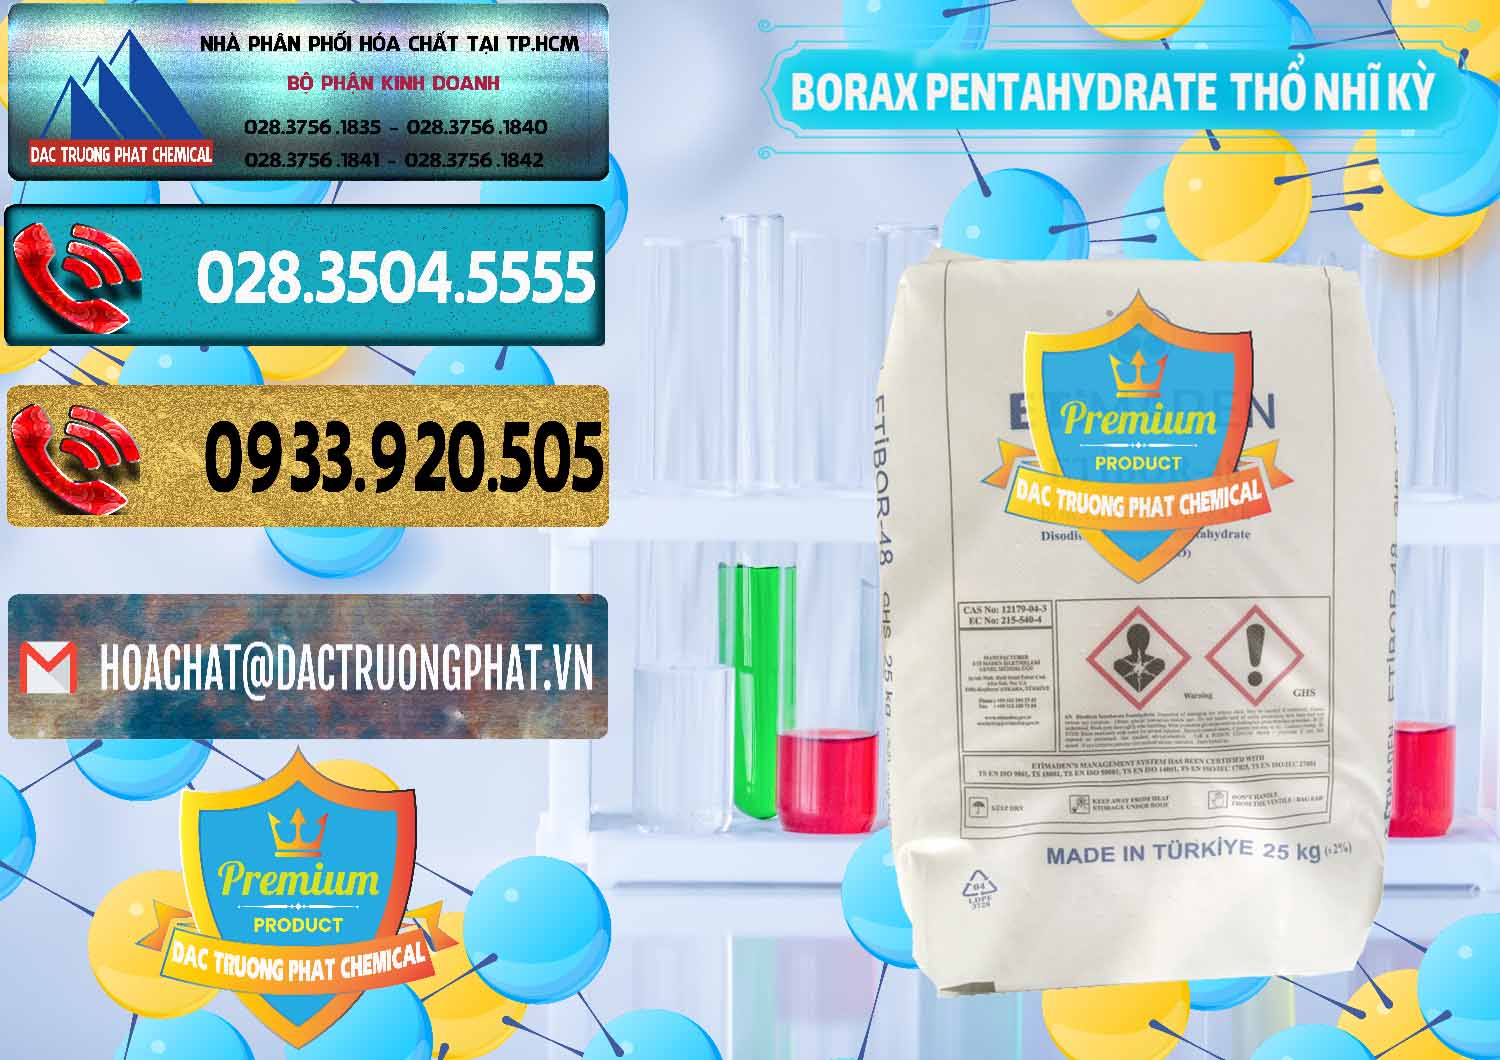 Cty chuyên kinh doanh ( bán ) Borax Pentahydrate Thổ Nhĩ Kỳ Turkey - 0431 - Nhập khẩu & cung cấp hóa chất tại TP.HCM - hoachatdetnhuom.com